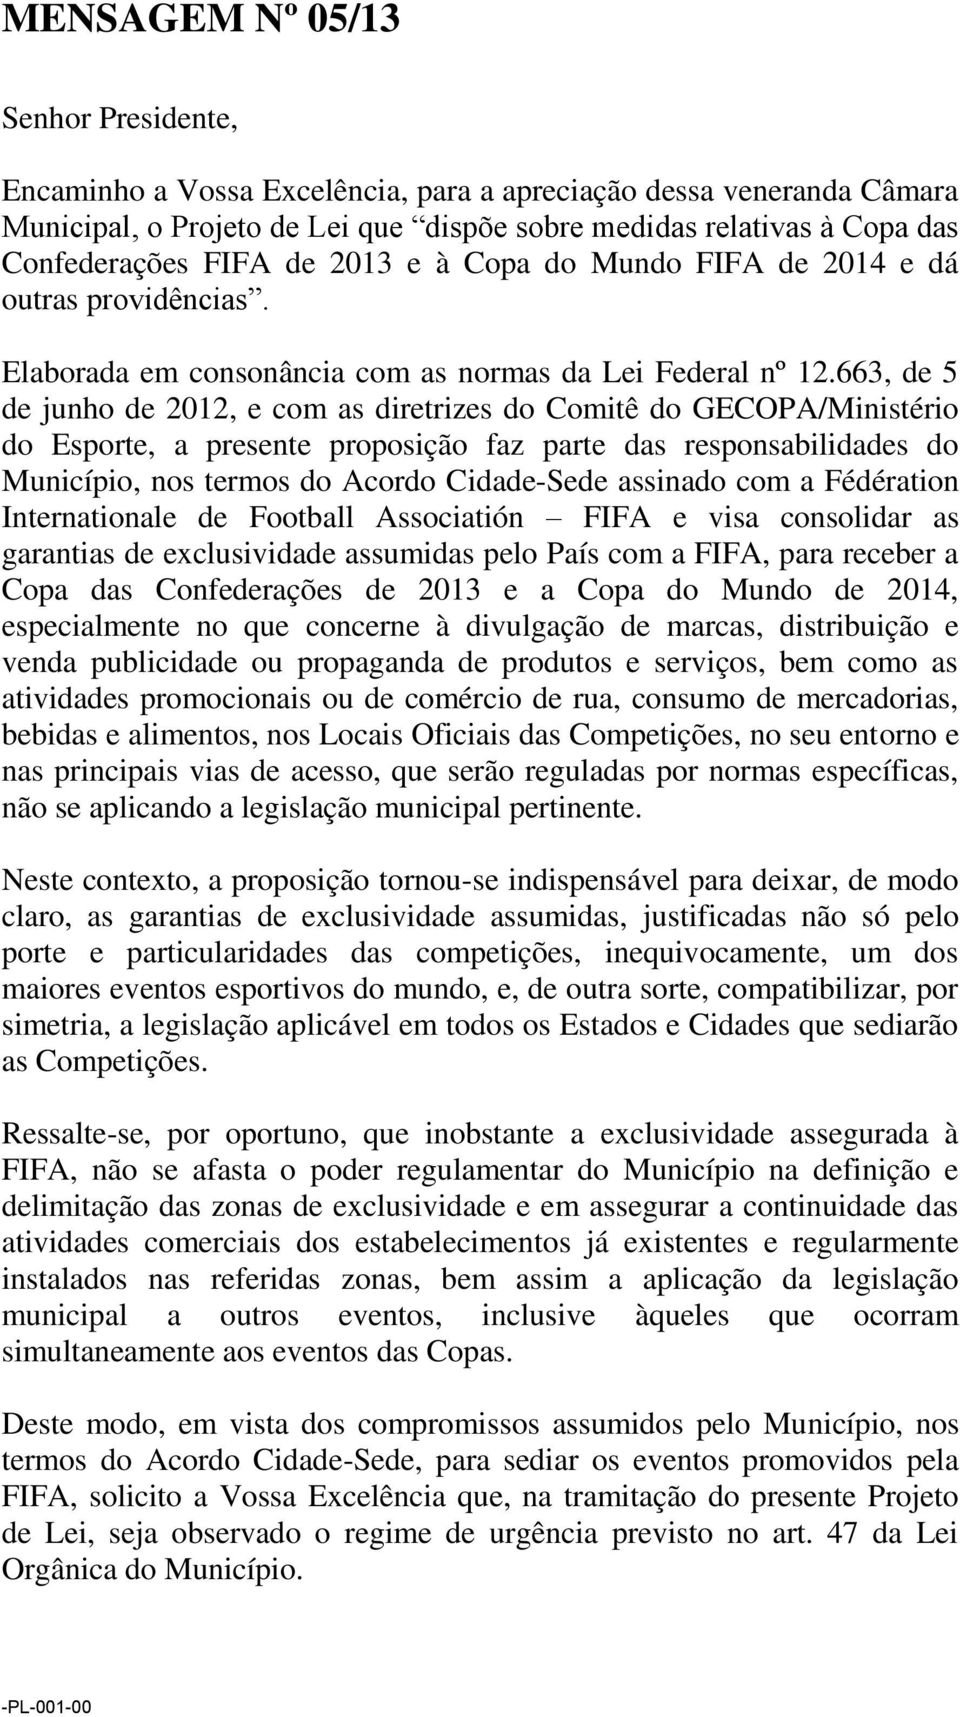 663, de 5 de junho de 2012, e com as diretrizes do Comitê do GECOPA/Ministério do Esporte, a presente proposição faz parte das responsabilidades do Município, nos termos do Acordo Cidade-Sede